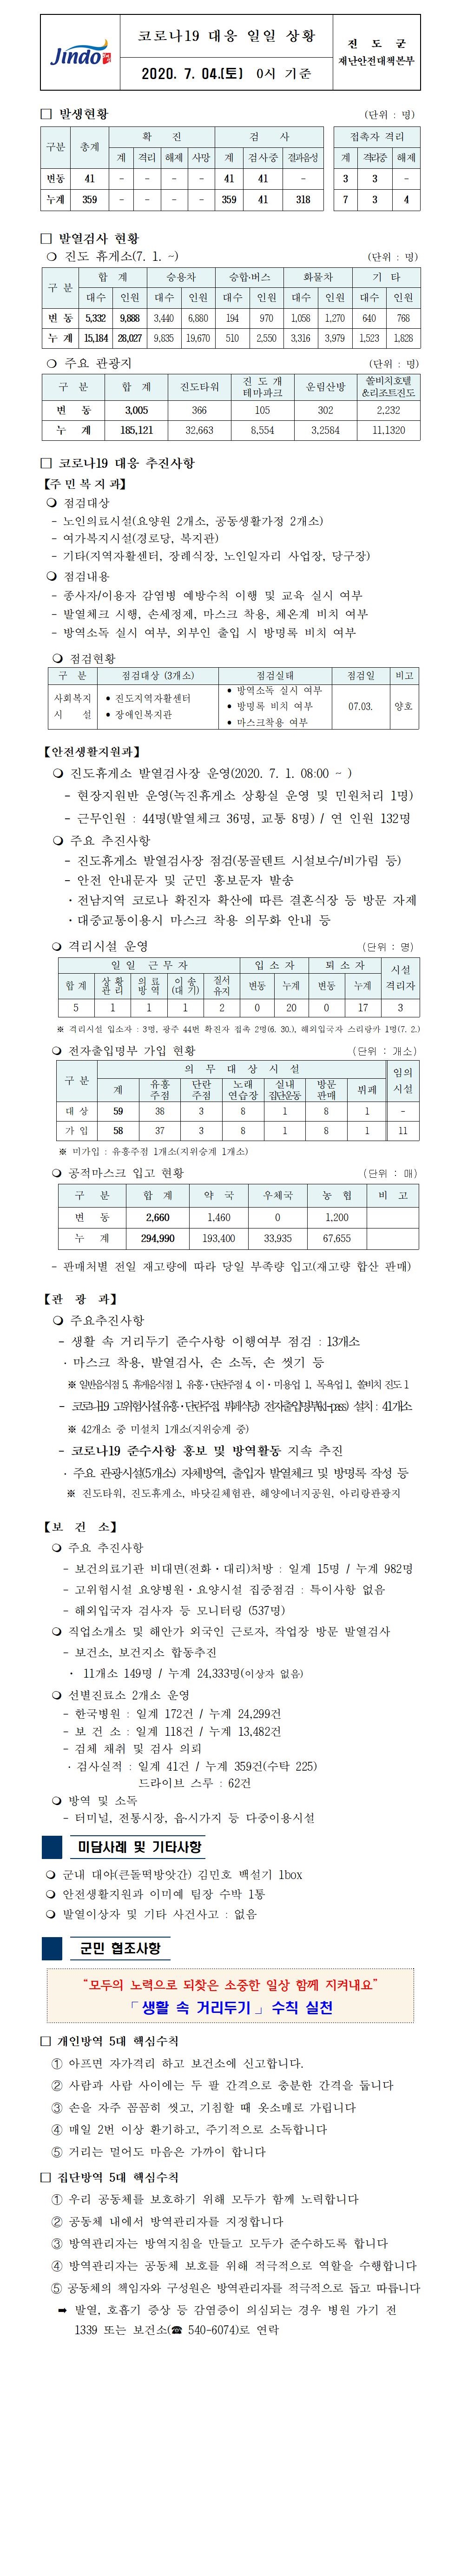 코로나19대응 일일 상황 보고(7월 4일 0시 기준) 첨부#1